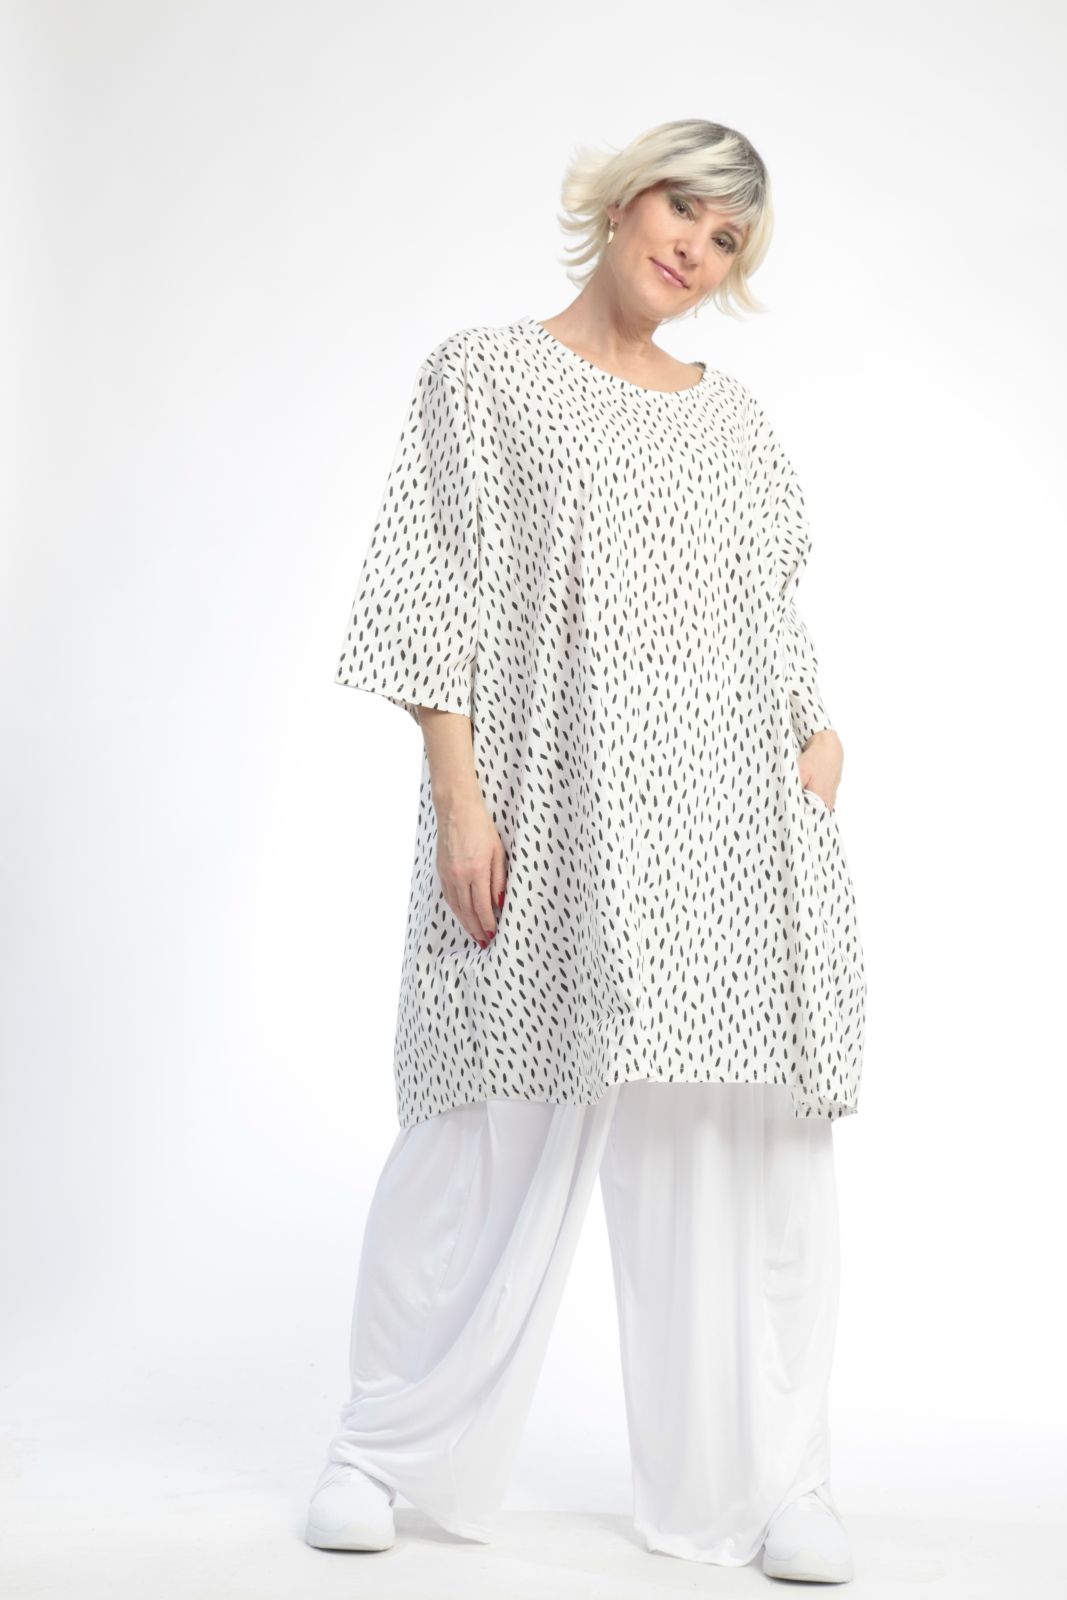 Sommer Big Shirt in Ballon Form aus er Qualität, Weiß Lagenlook Oversize Mode B2B Großhandel